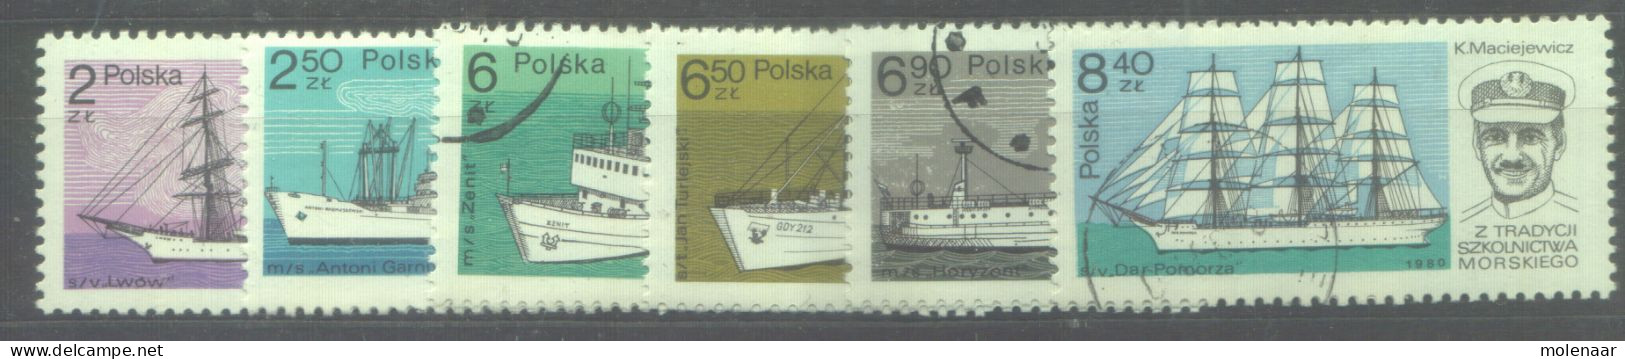 Postzegels > Europa > Polen > 1944-.... Republiek > 1981-90 > Gebruikt 2701-2706 (12187) - Gebraucht